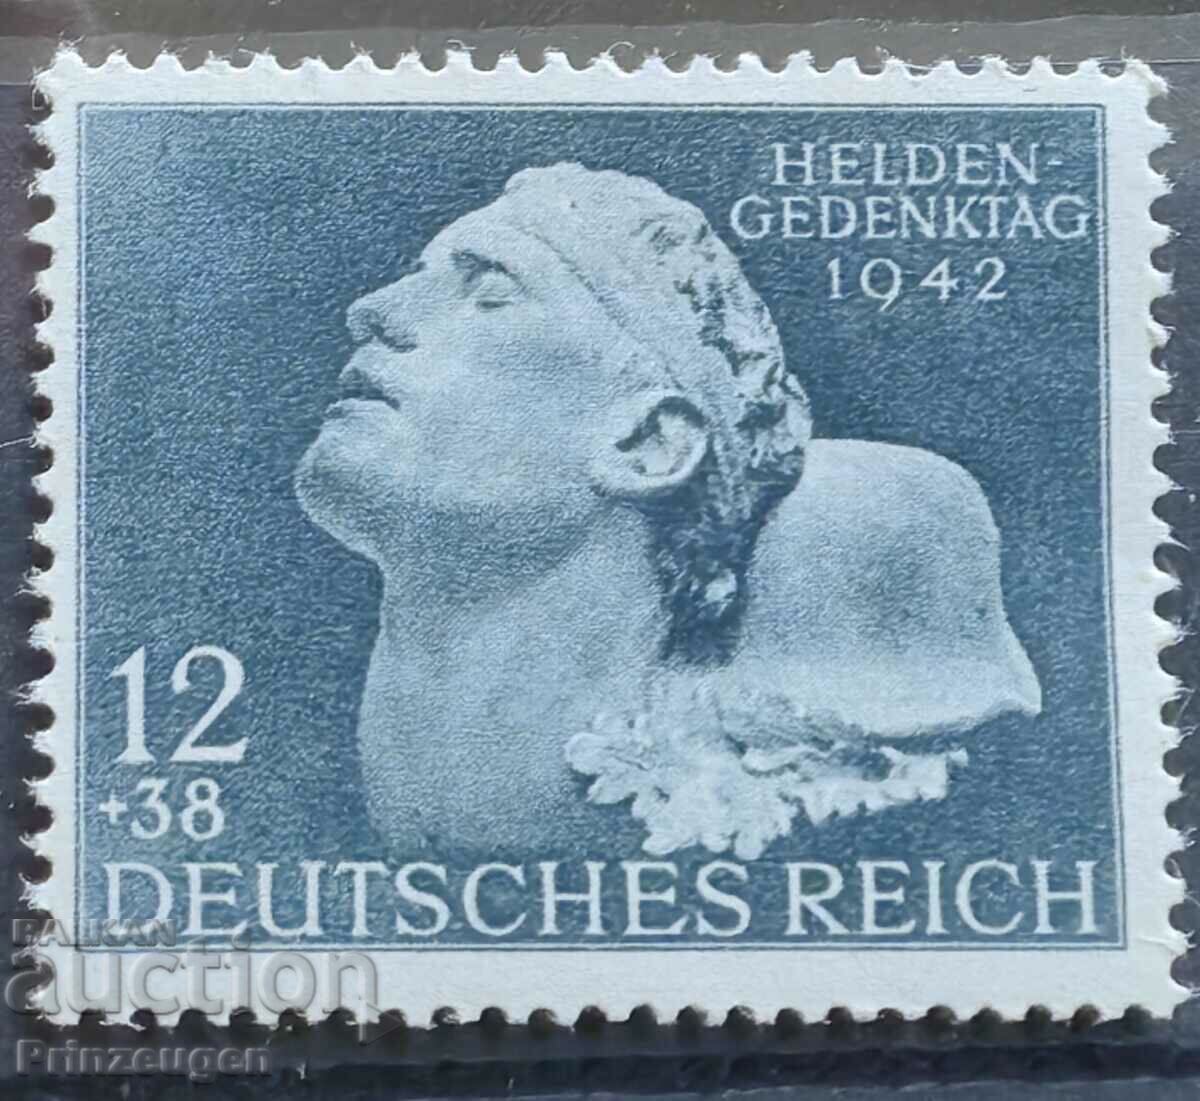 Germania - Al Treilea Reich - 1942 - serie completa